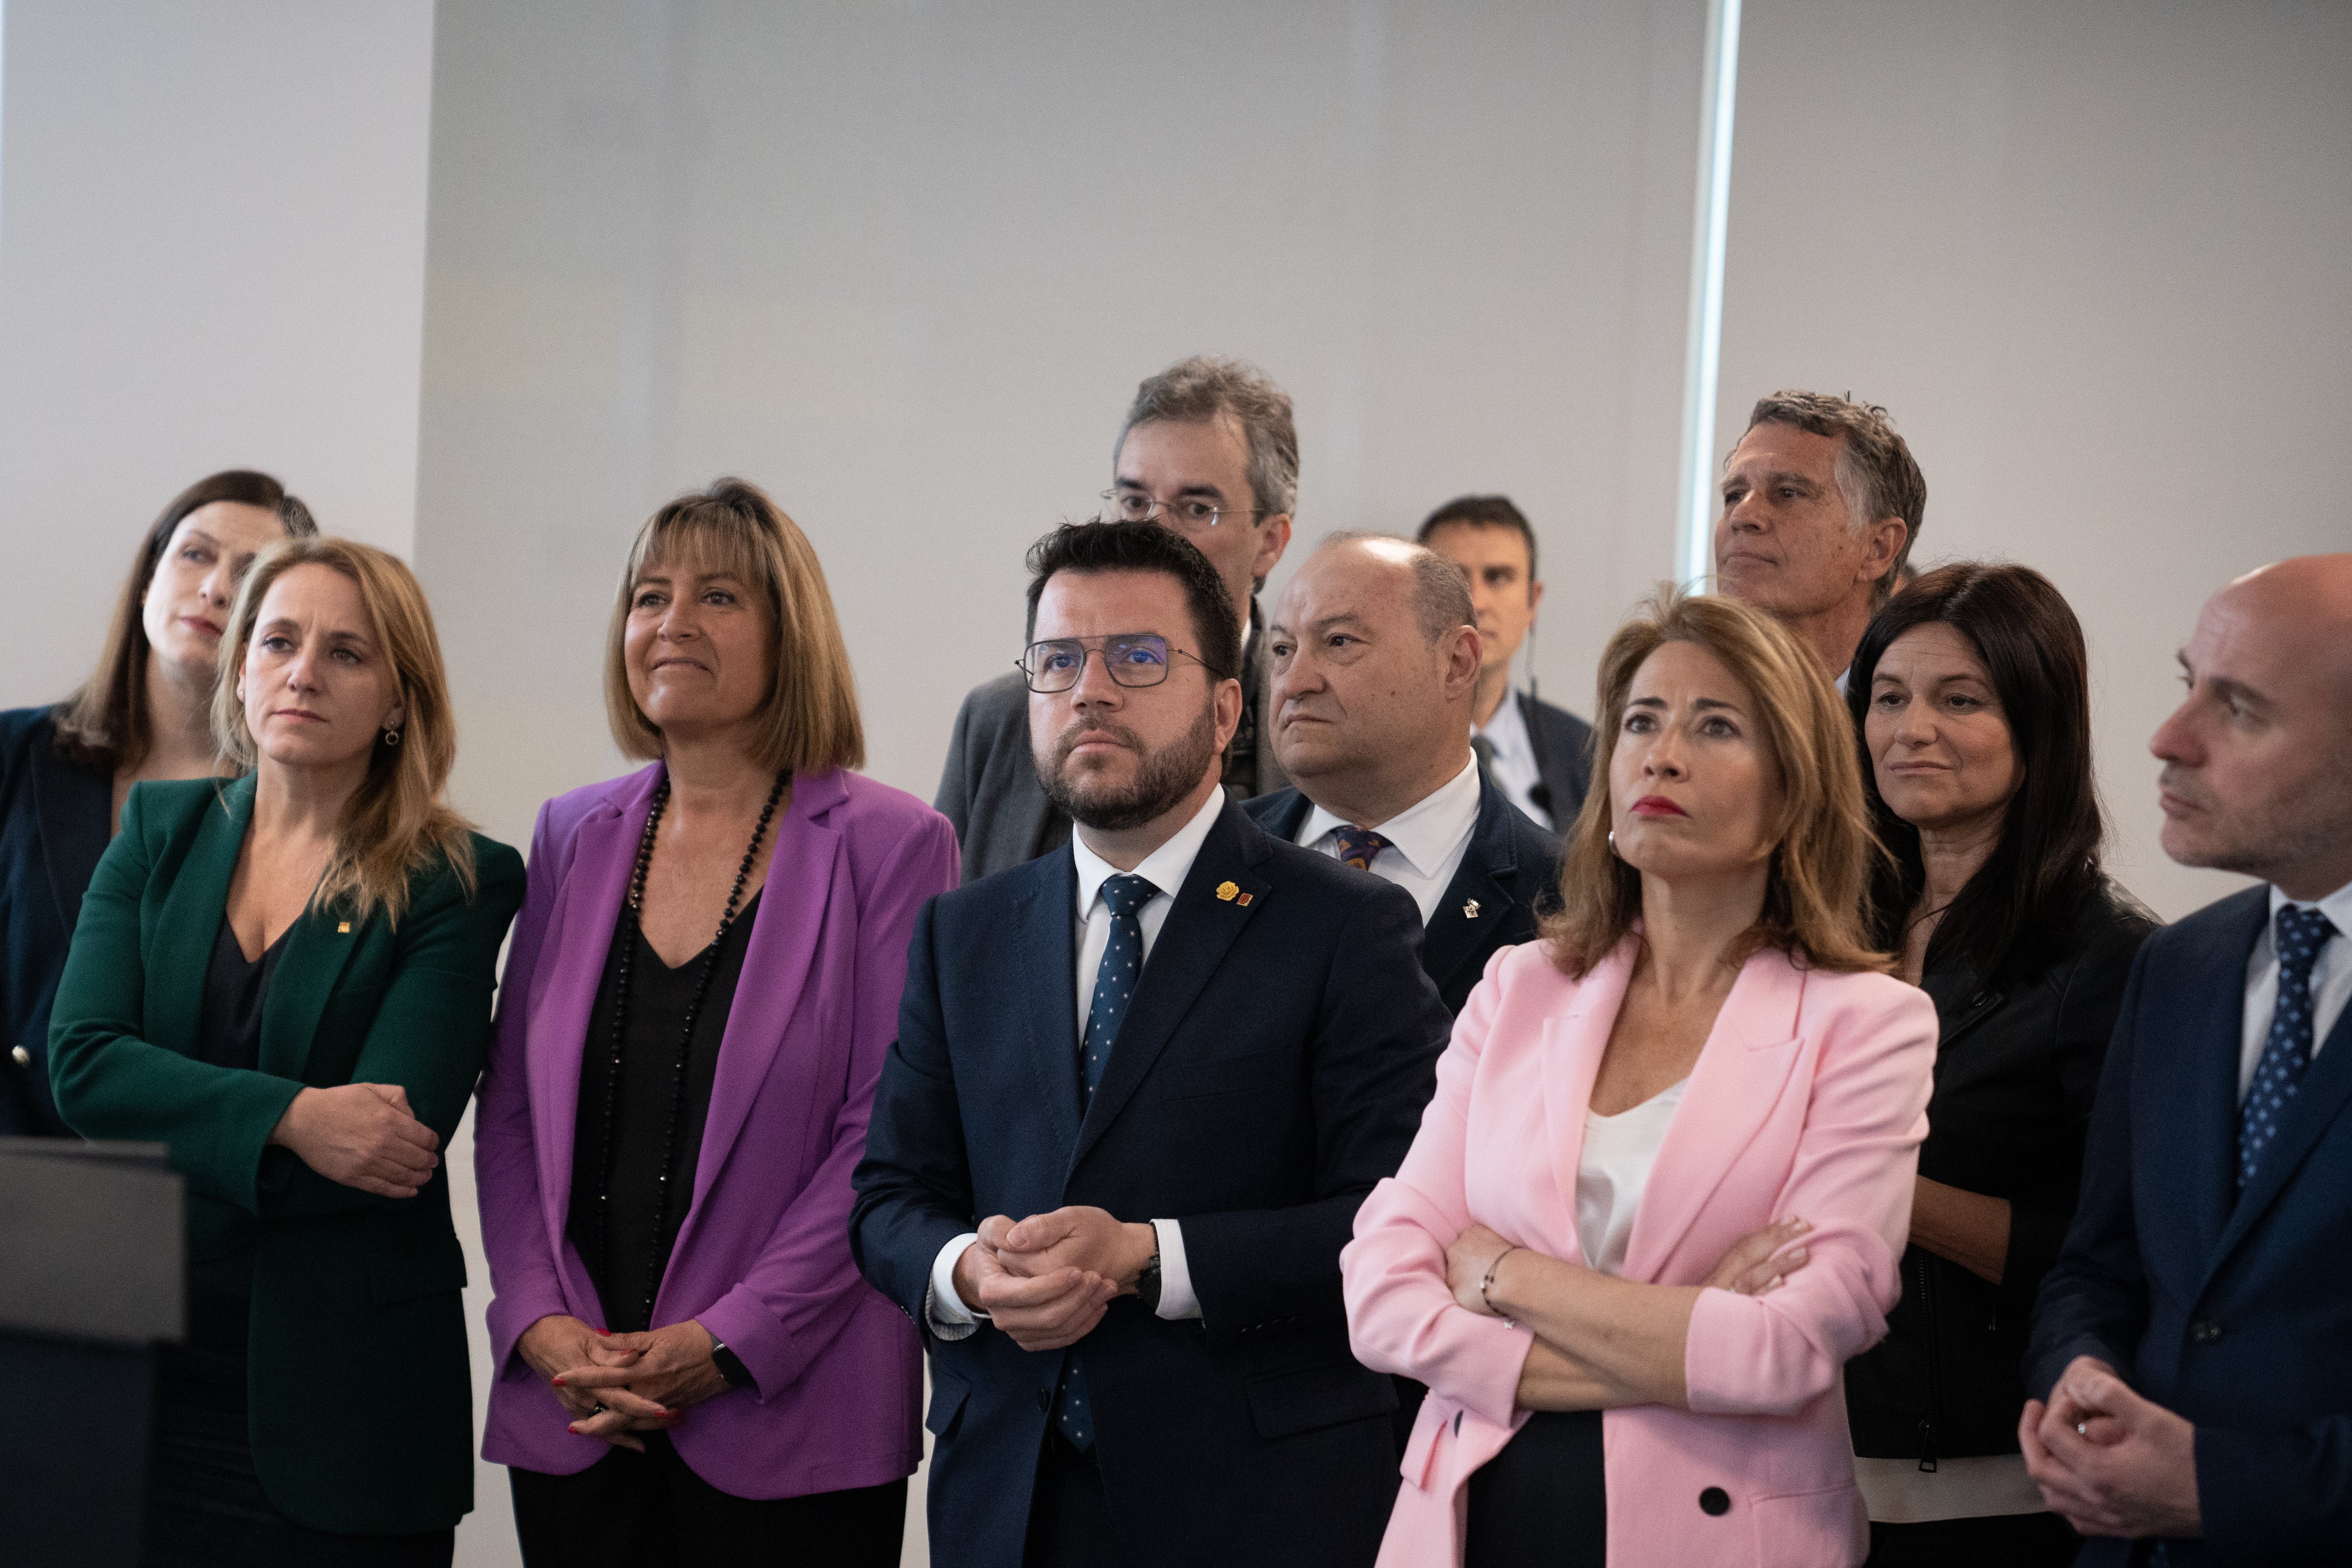 Aragonès responde a la ministra Sánchez que Rodalies es "de interés ciudadano, no del Estado"